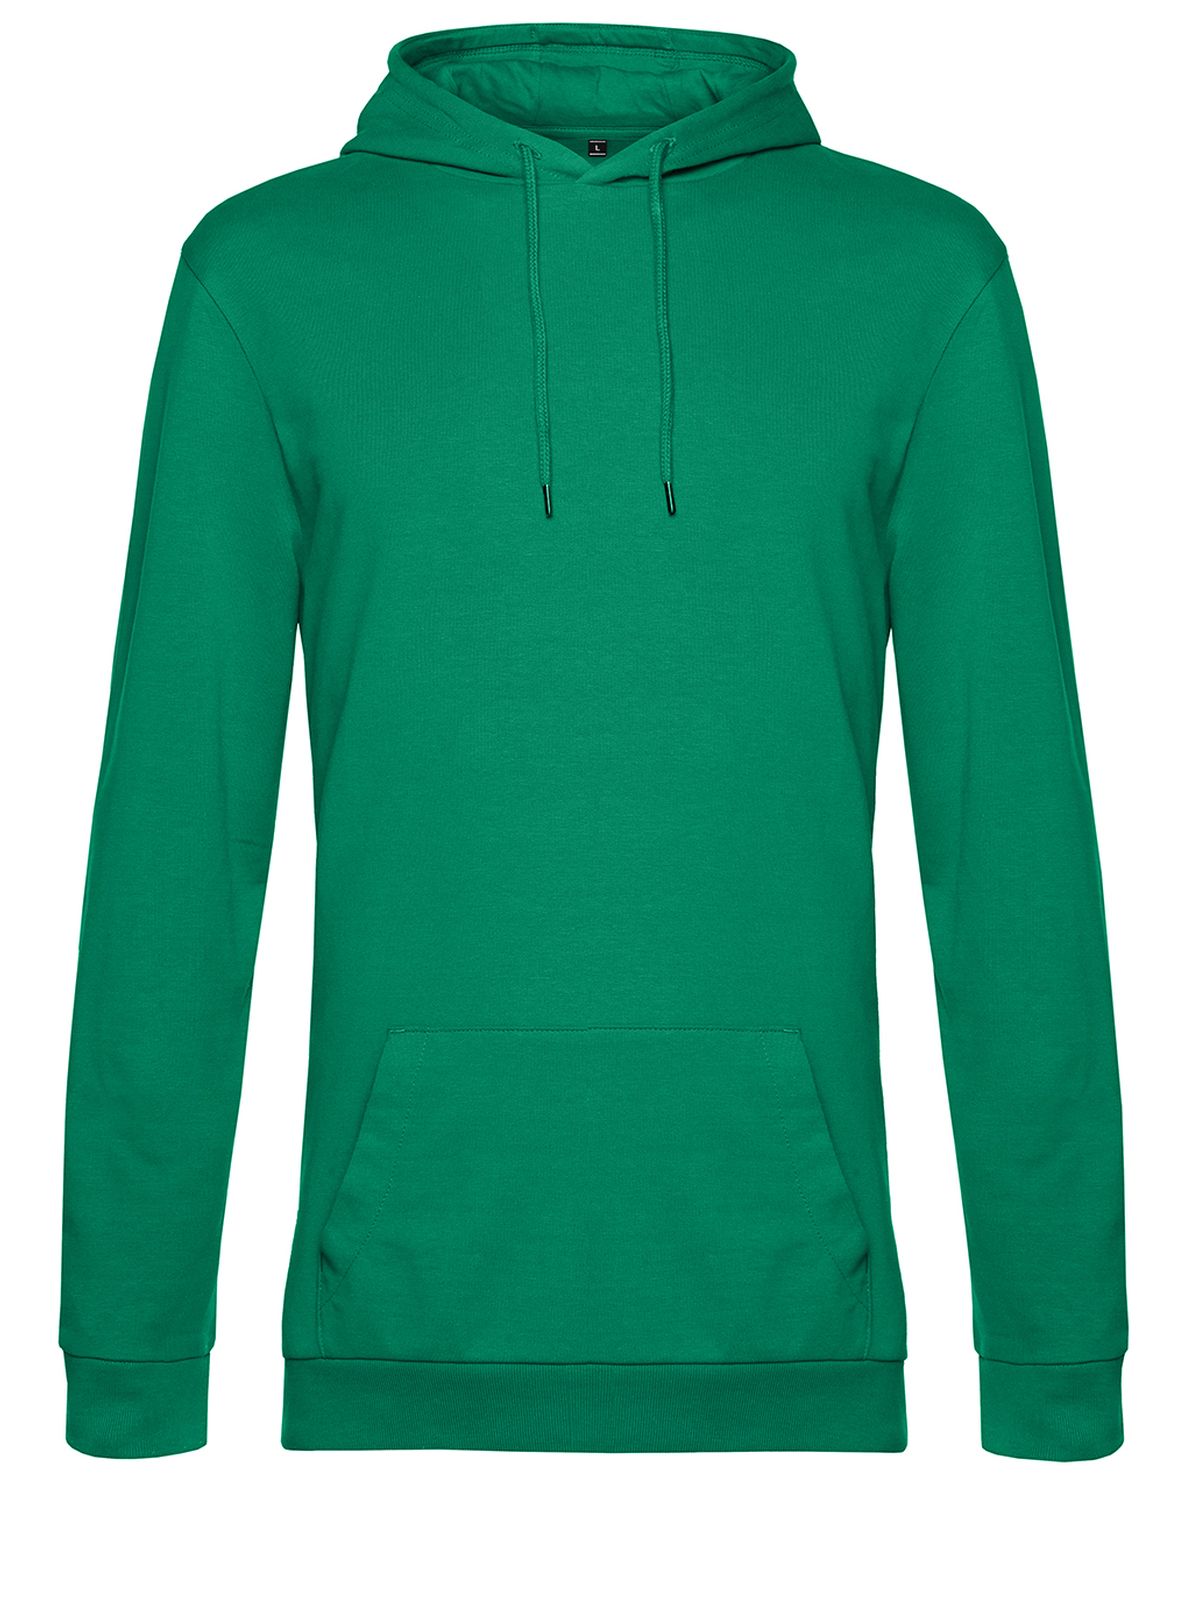 hoodie-kelly-green.webp